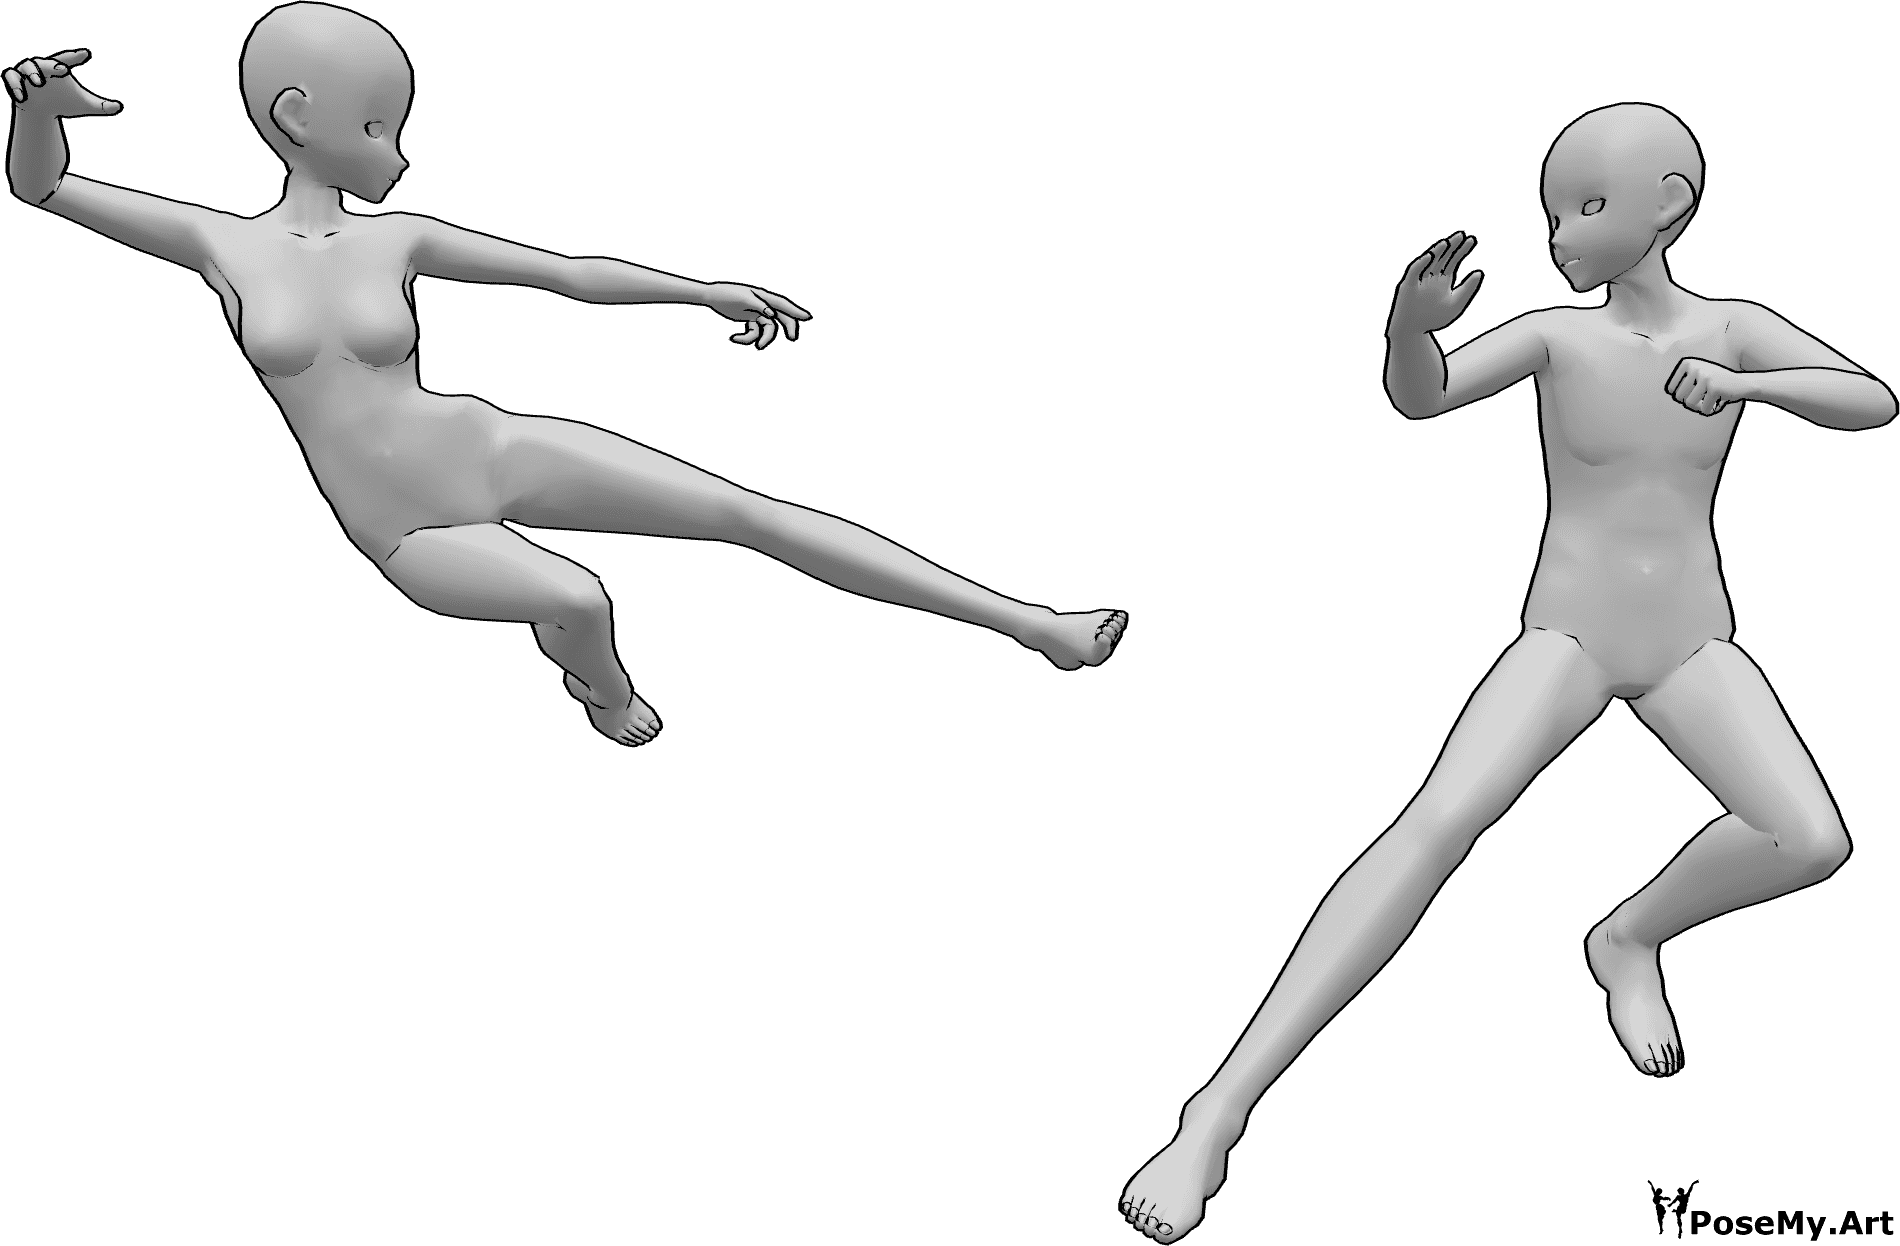 Referencia de poses- Postura de batalla femenina masculina - Anime hembra y macho están peleando, la hembra está a punto de patear al macho